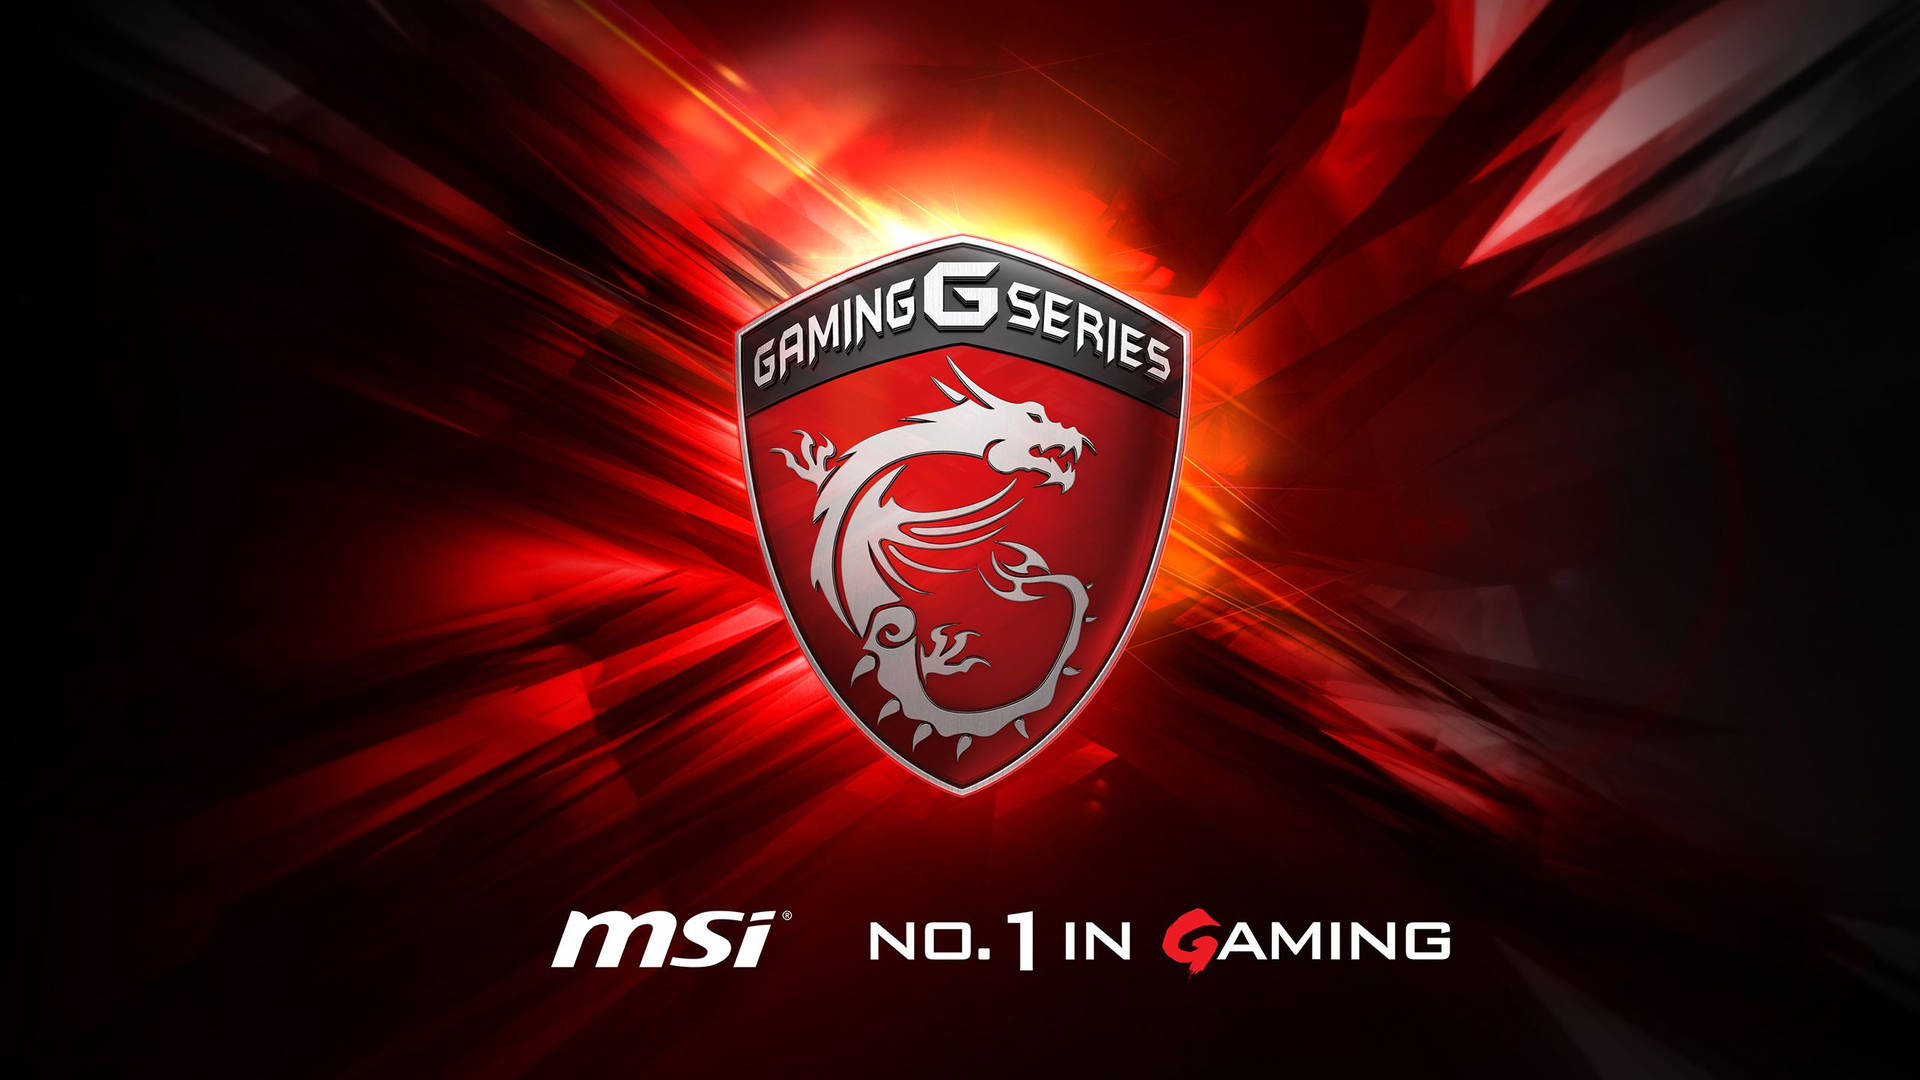 Red Msi Gaming G Series Logo Background